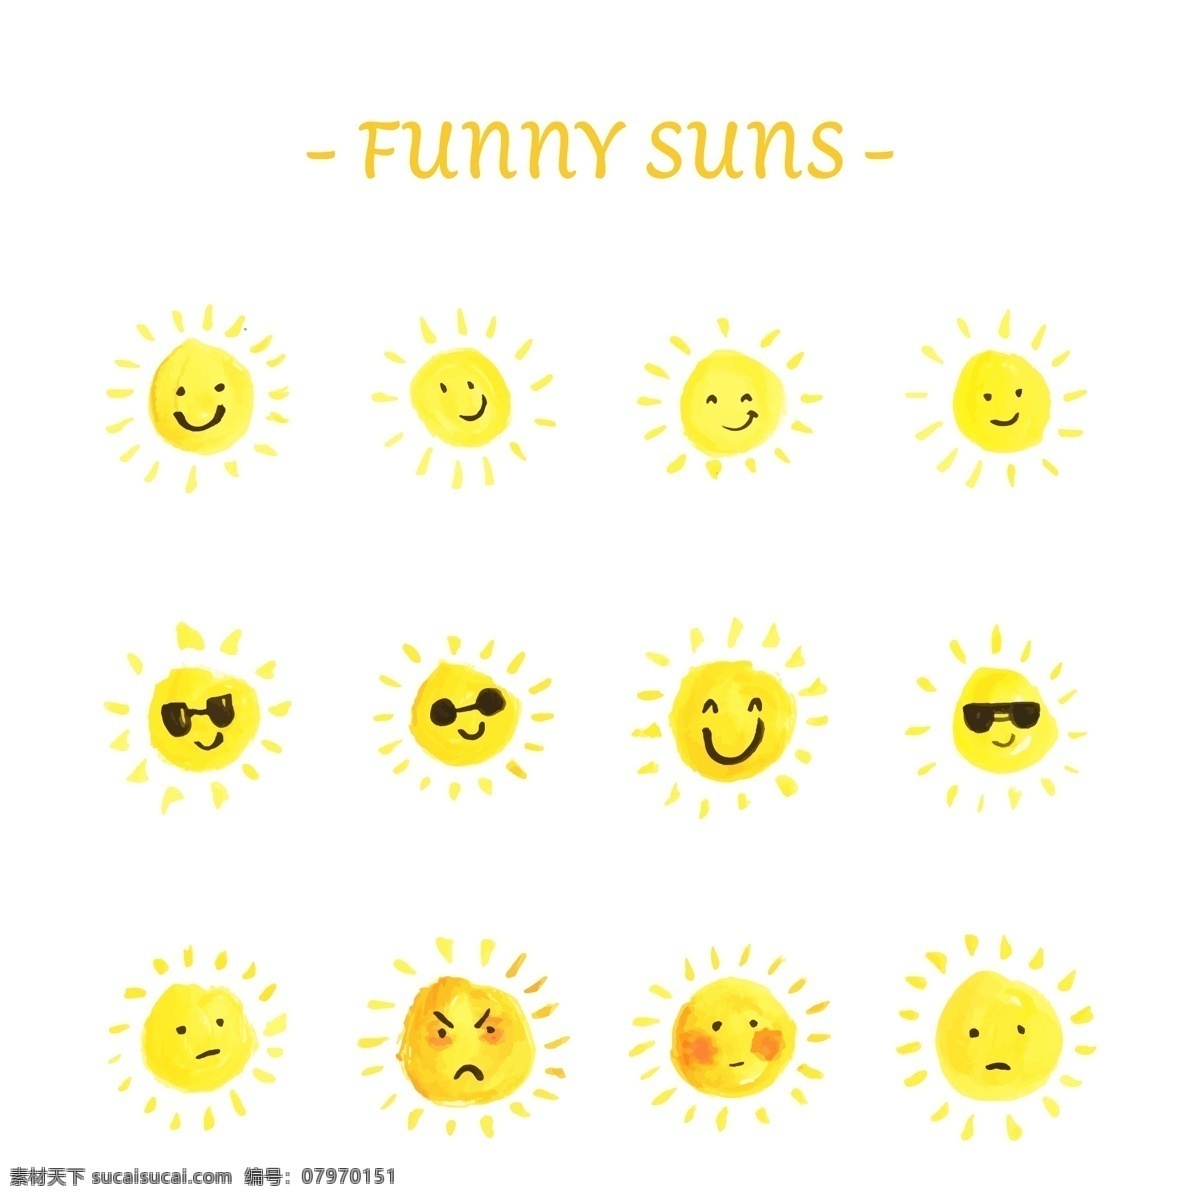 趣味 太阳 表情 太阳表情 太阳表情包 太阳镜 笑脸 矢量 高清图片